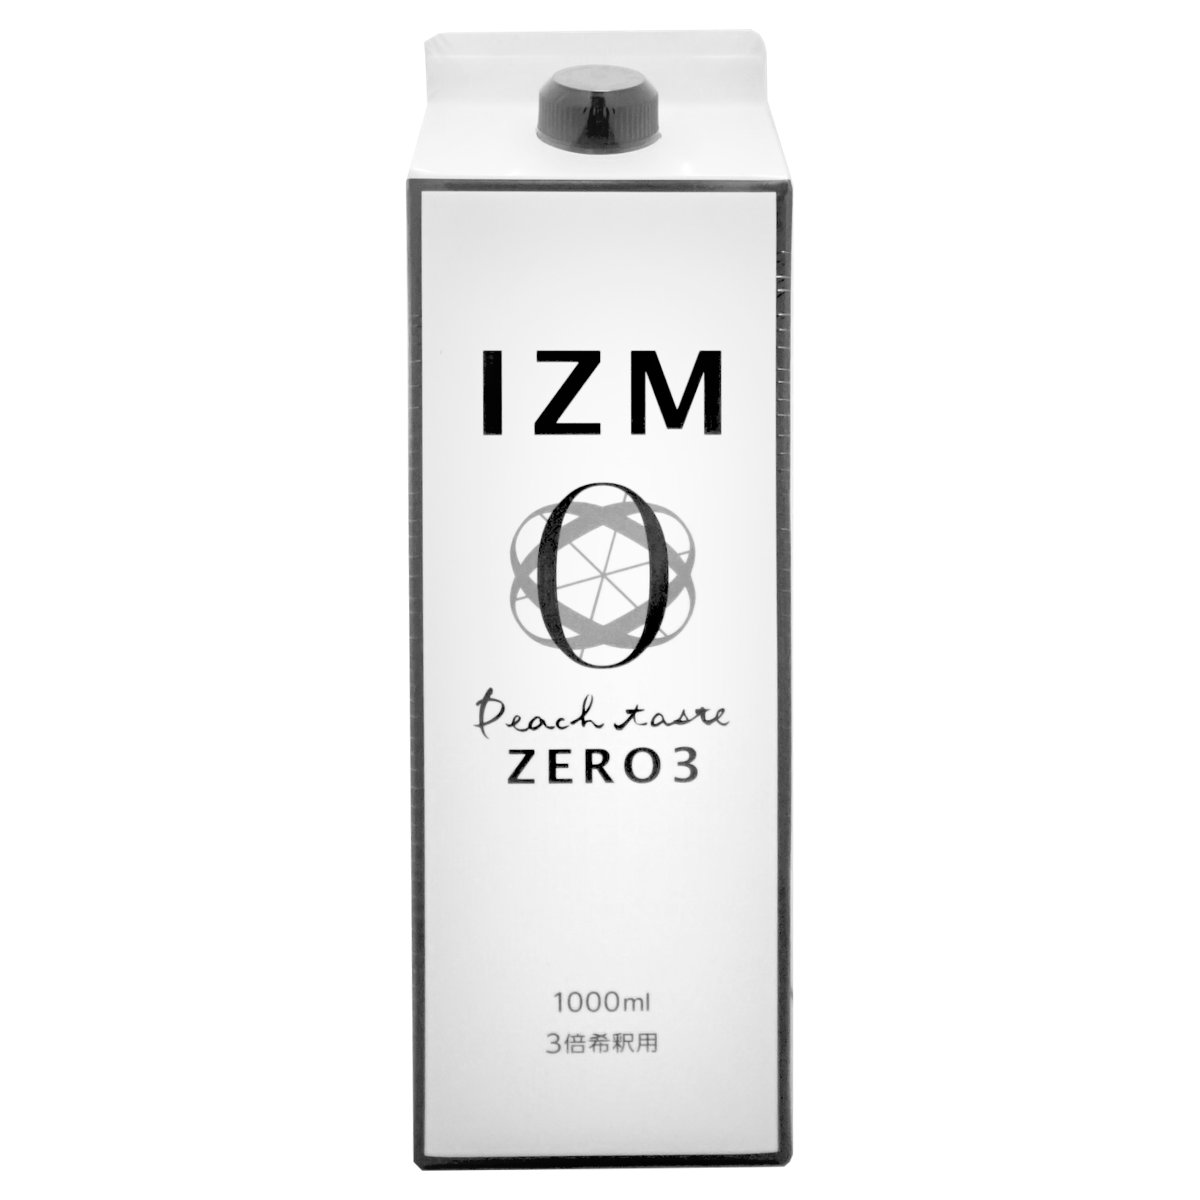 【お買い物マラソン】IZM酵素ドリンク1000ml ゼロスリー ZERO3【食品】【宅配便送料無料】 (6055791)